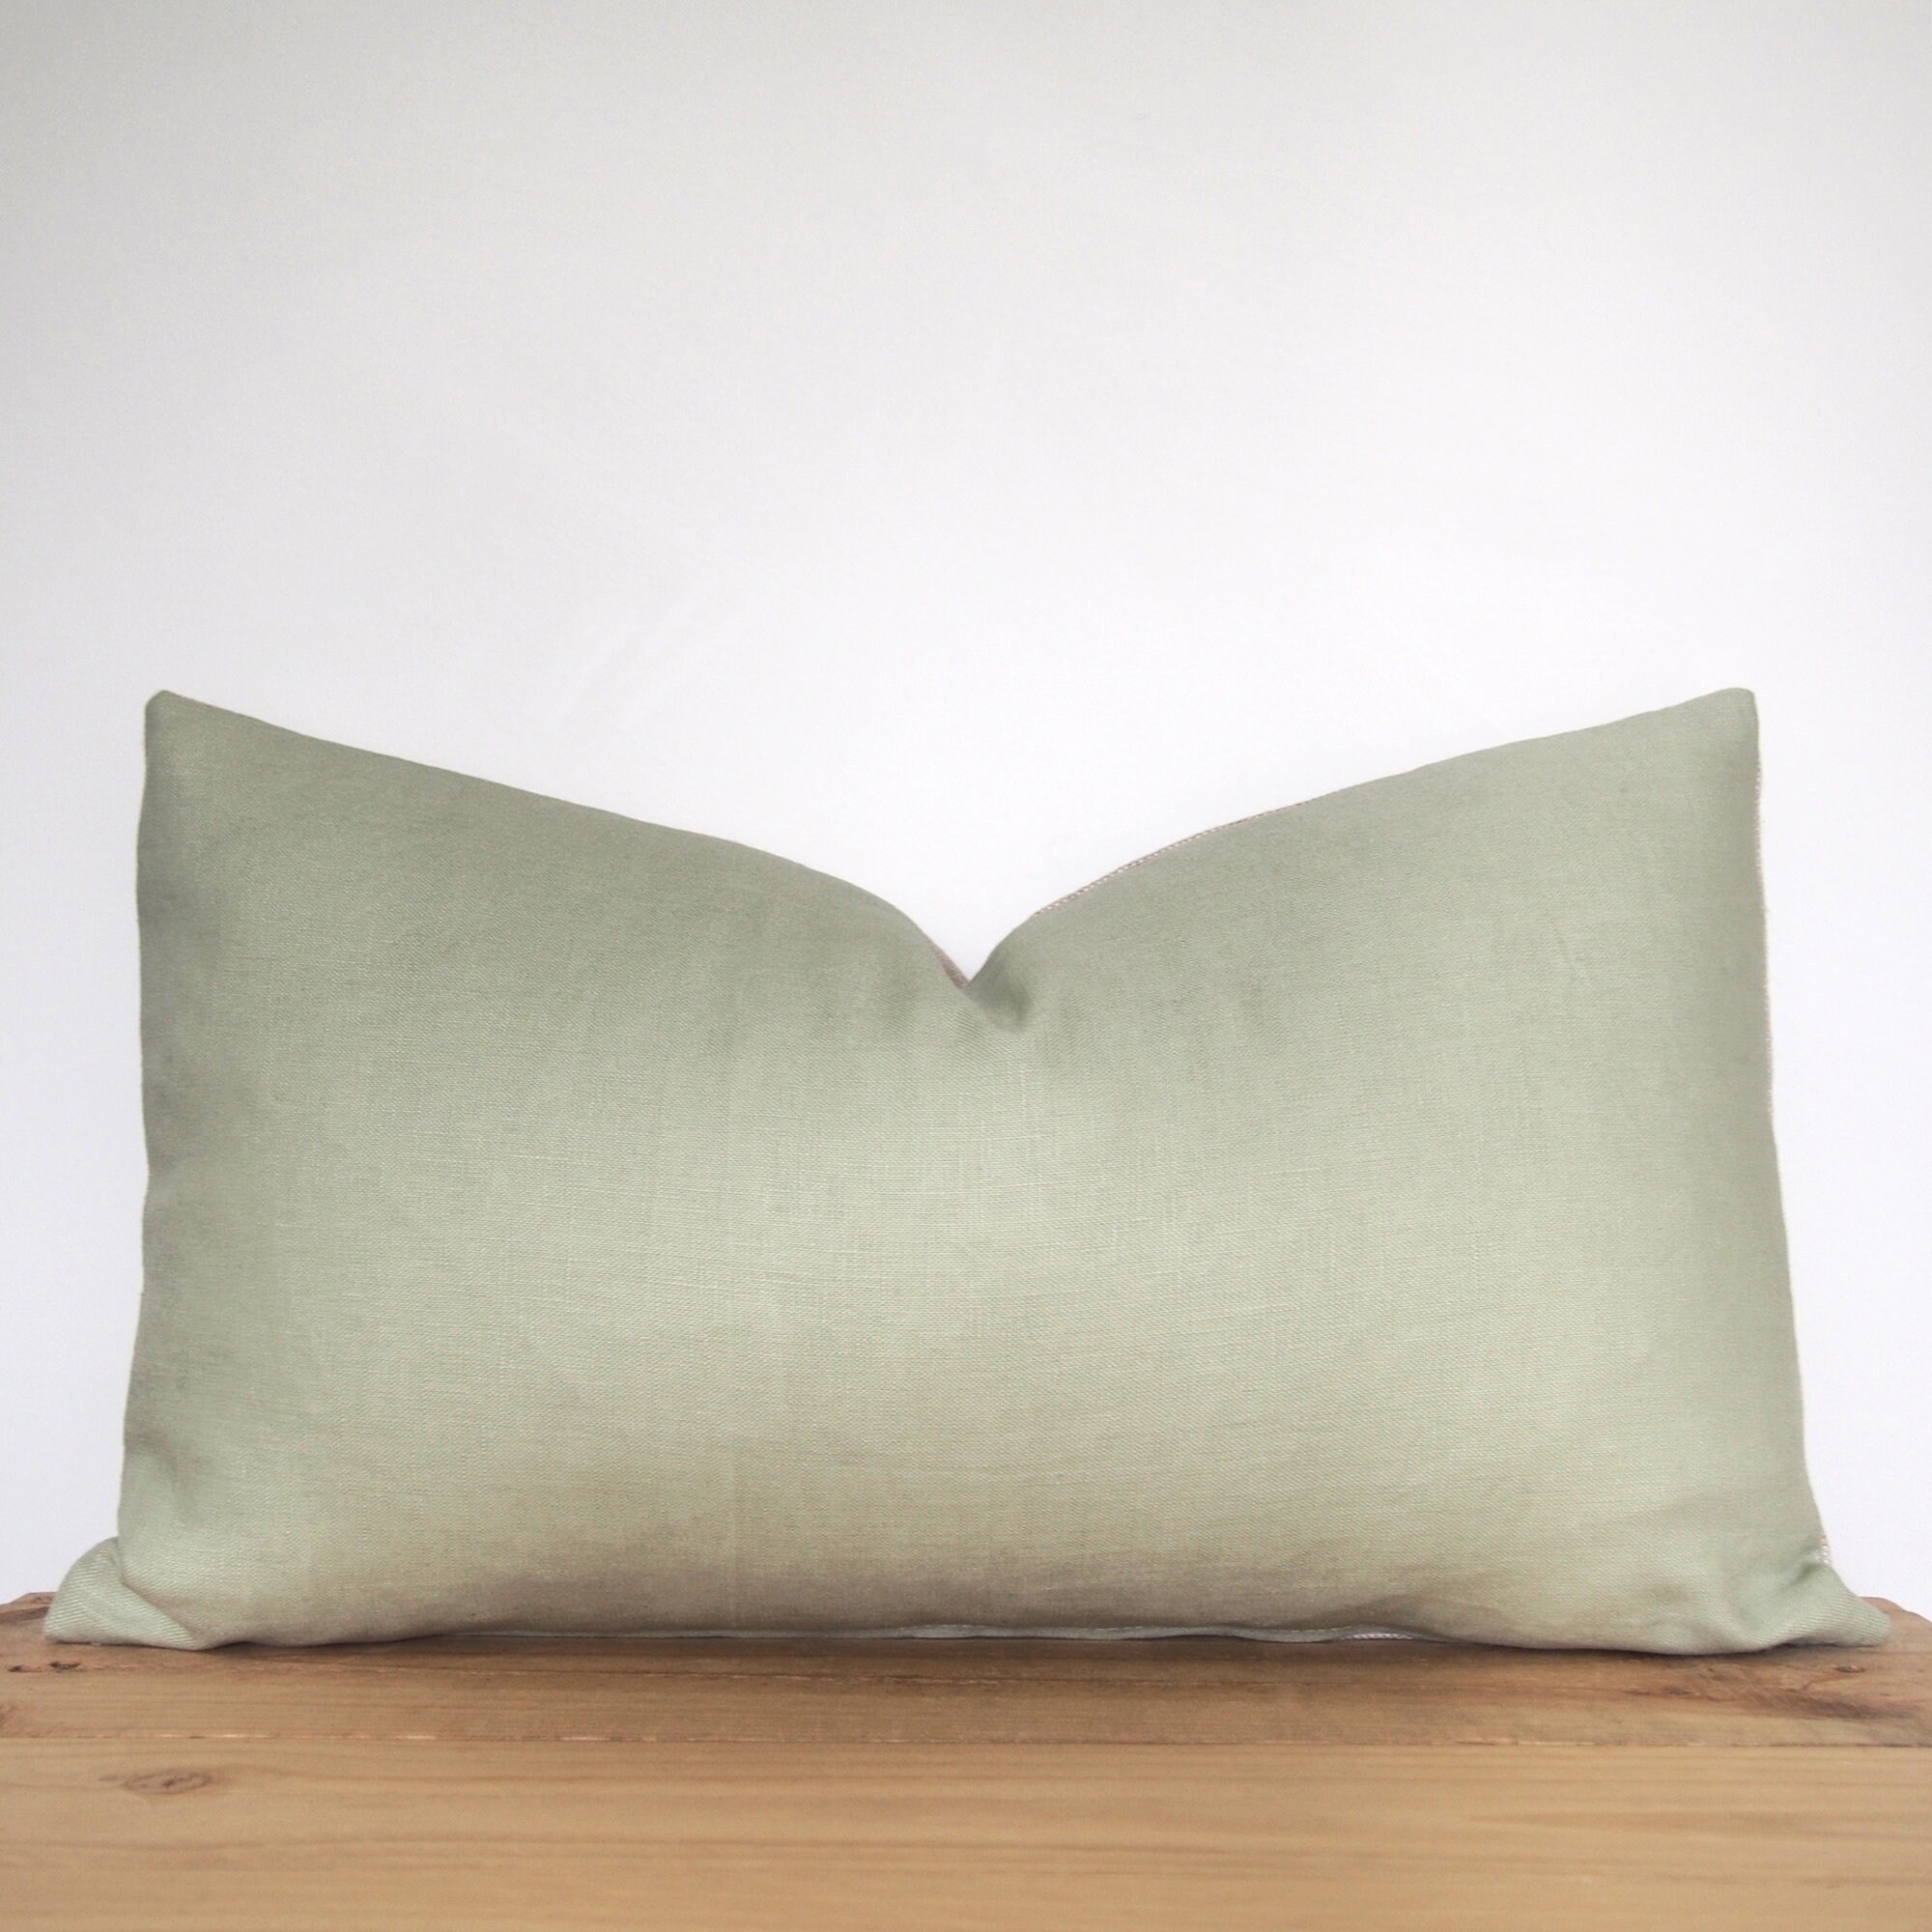 Green Cushion Cover / 50 x 30cm Cushion Cover / Cream Throw | Etsy